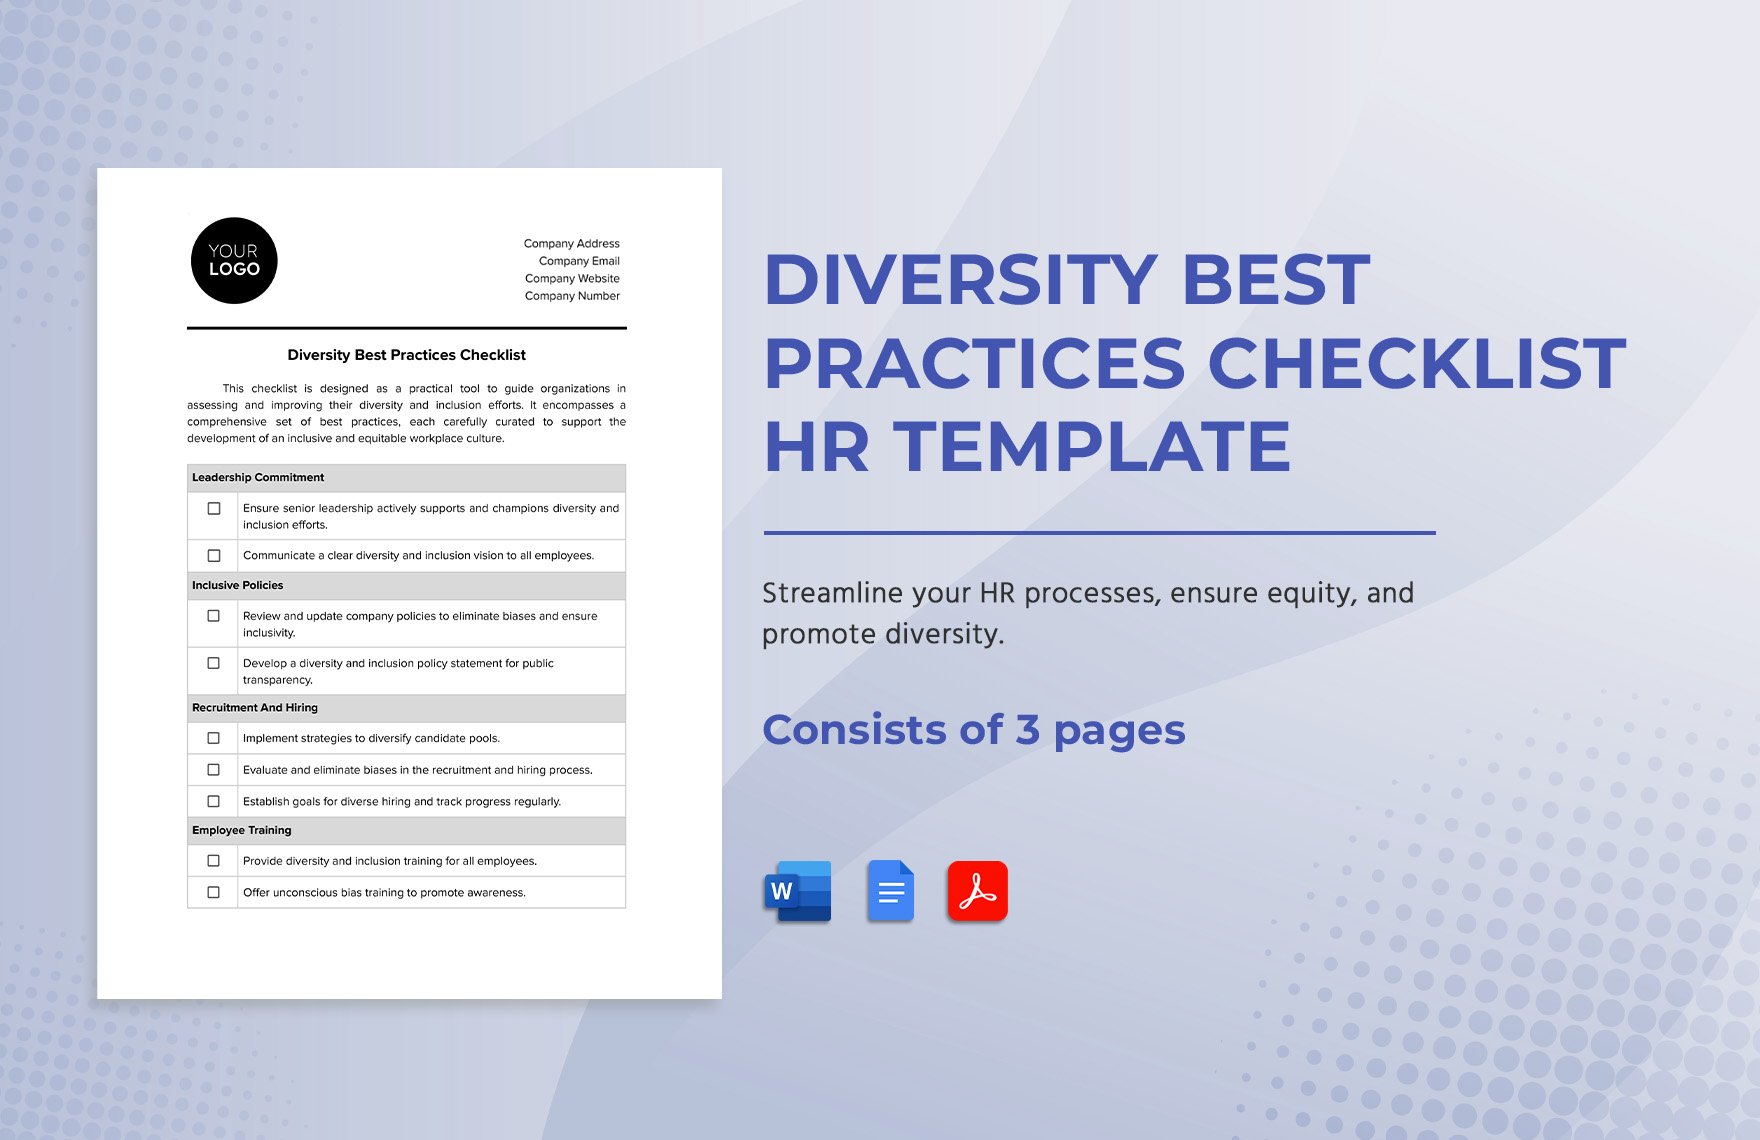 Diversity Best Practices Checklist HR Template